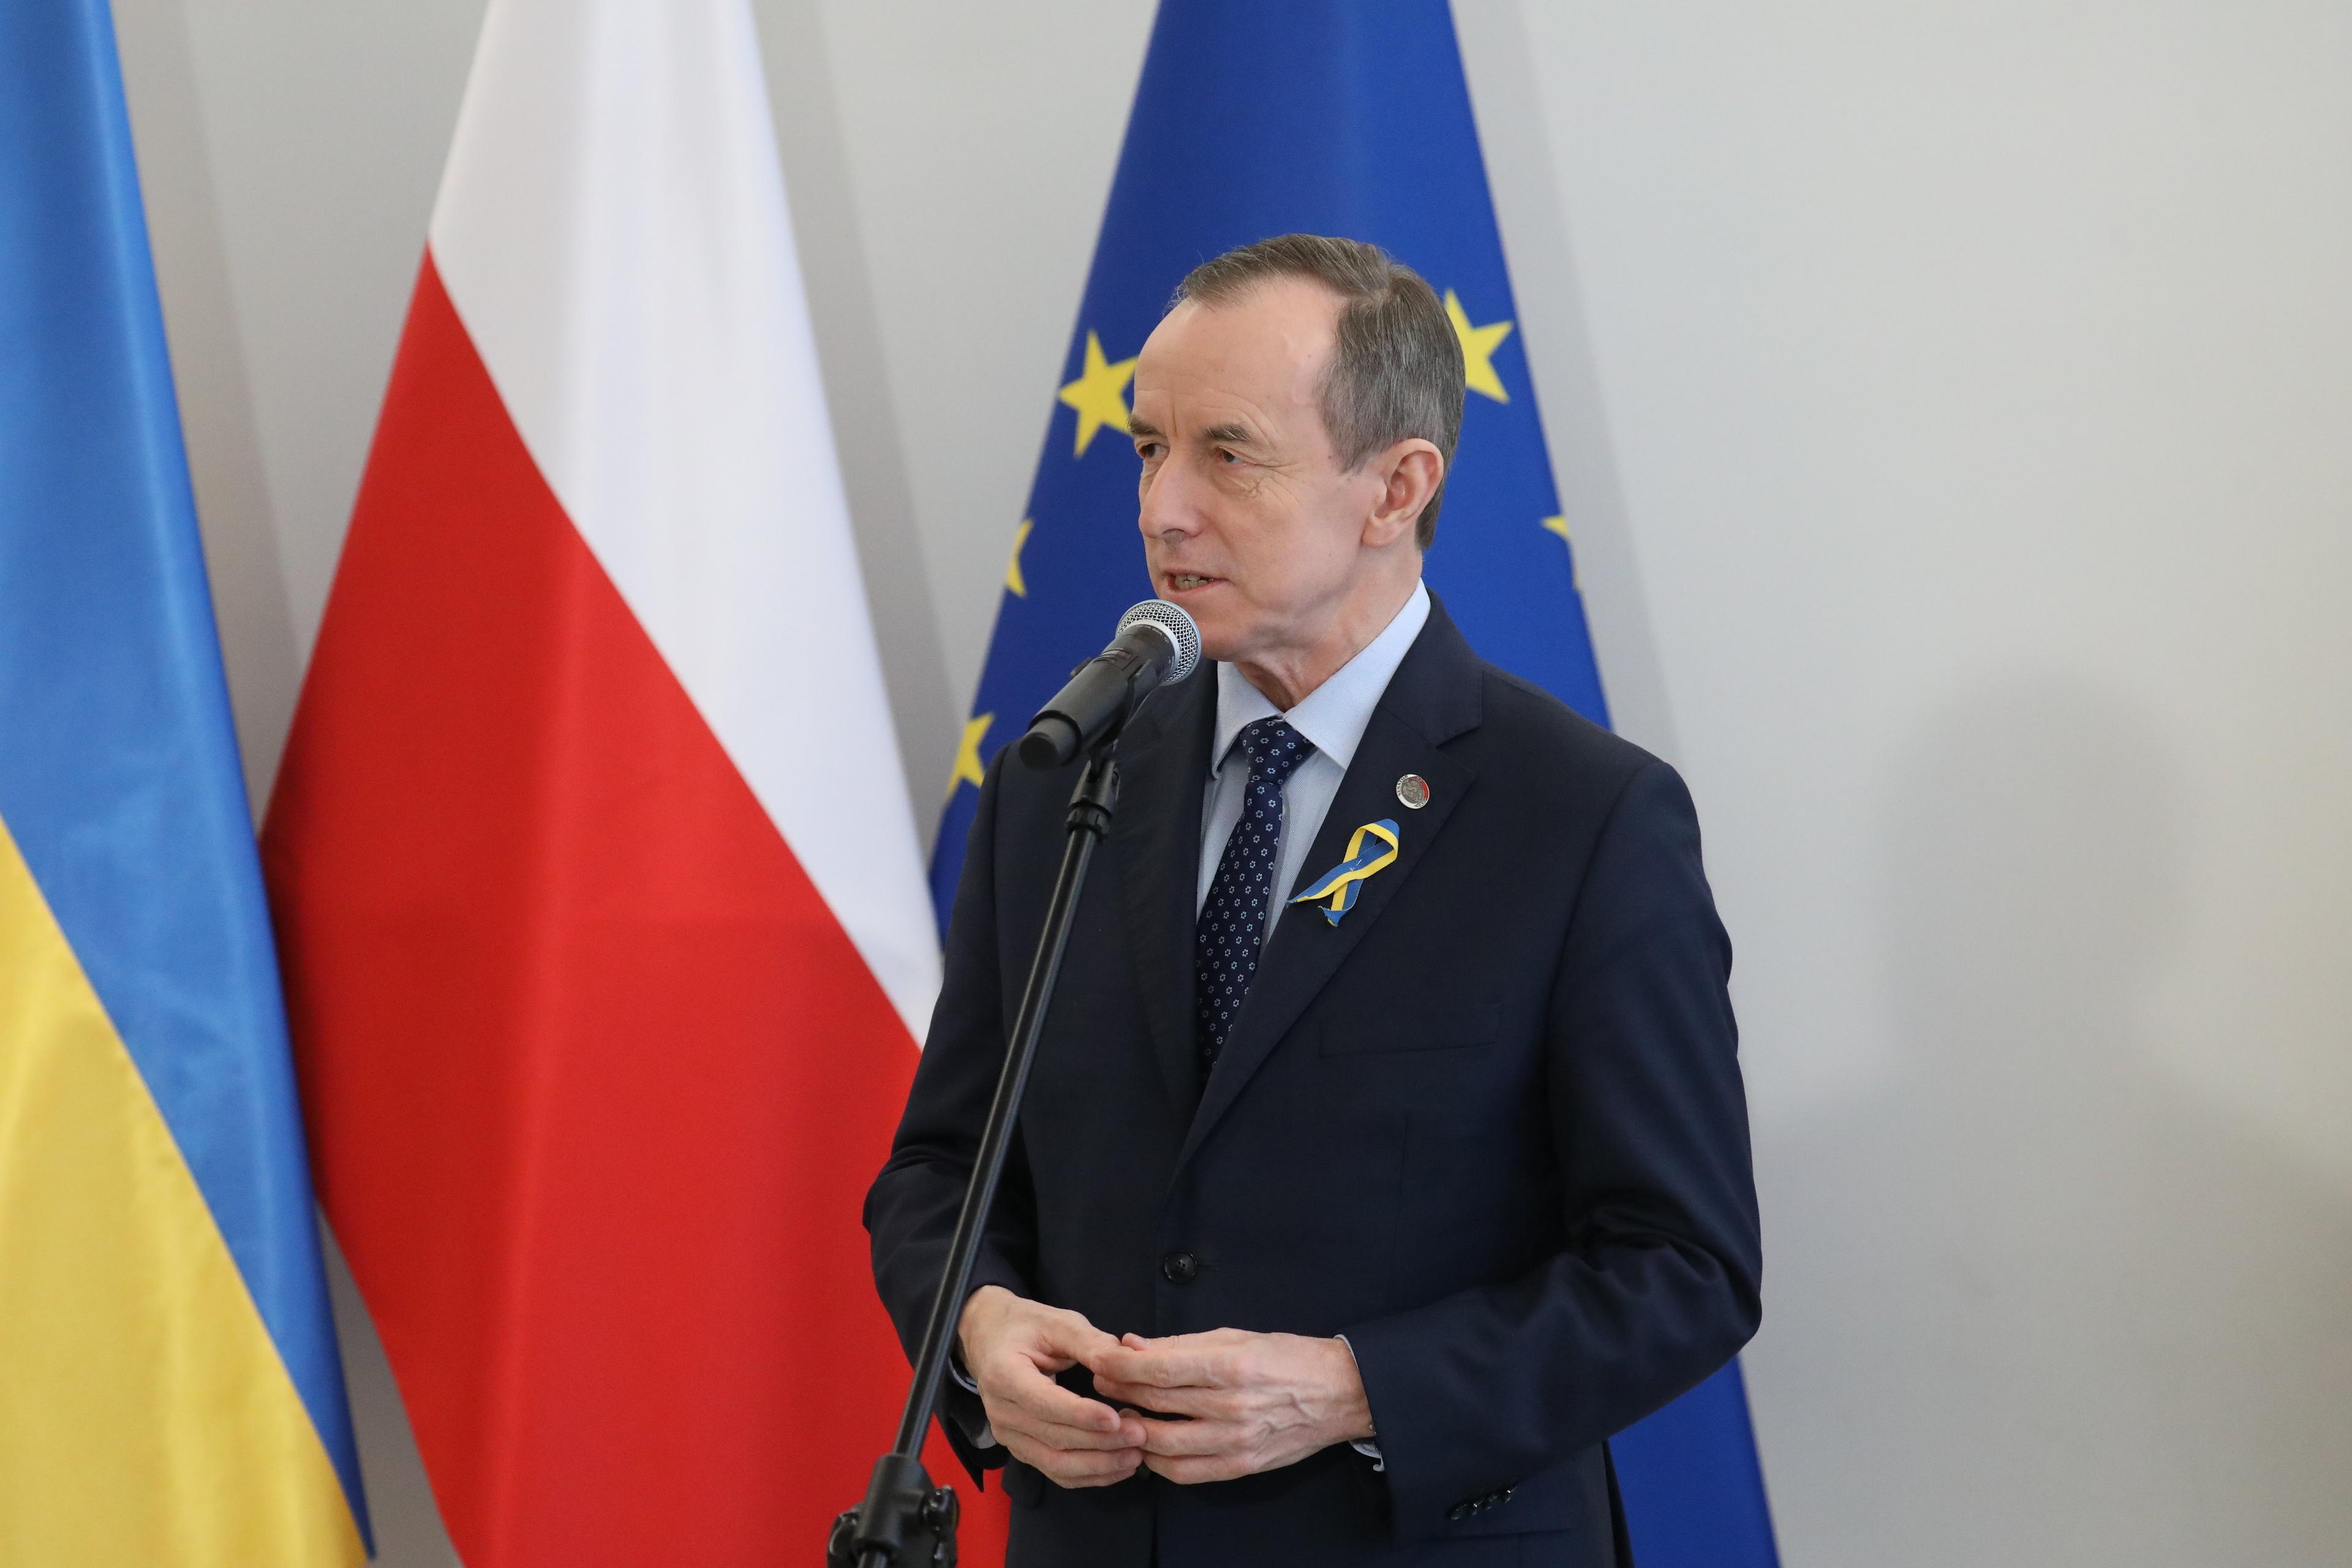 Marszałek Senatu Tomasz Grodzki na tle flag Ukrainy, Polski i Unii Europejskiej